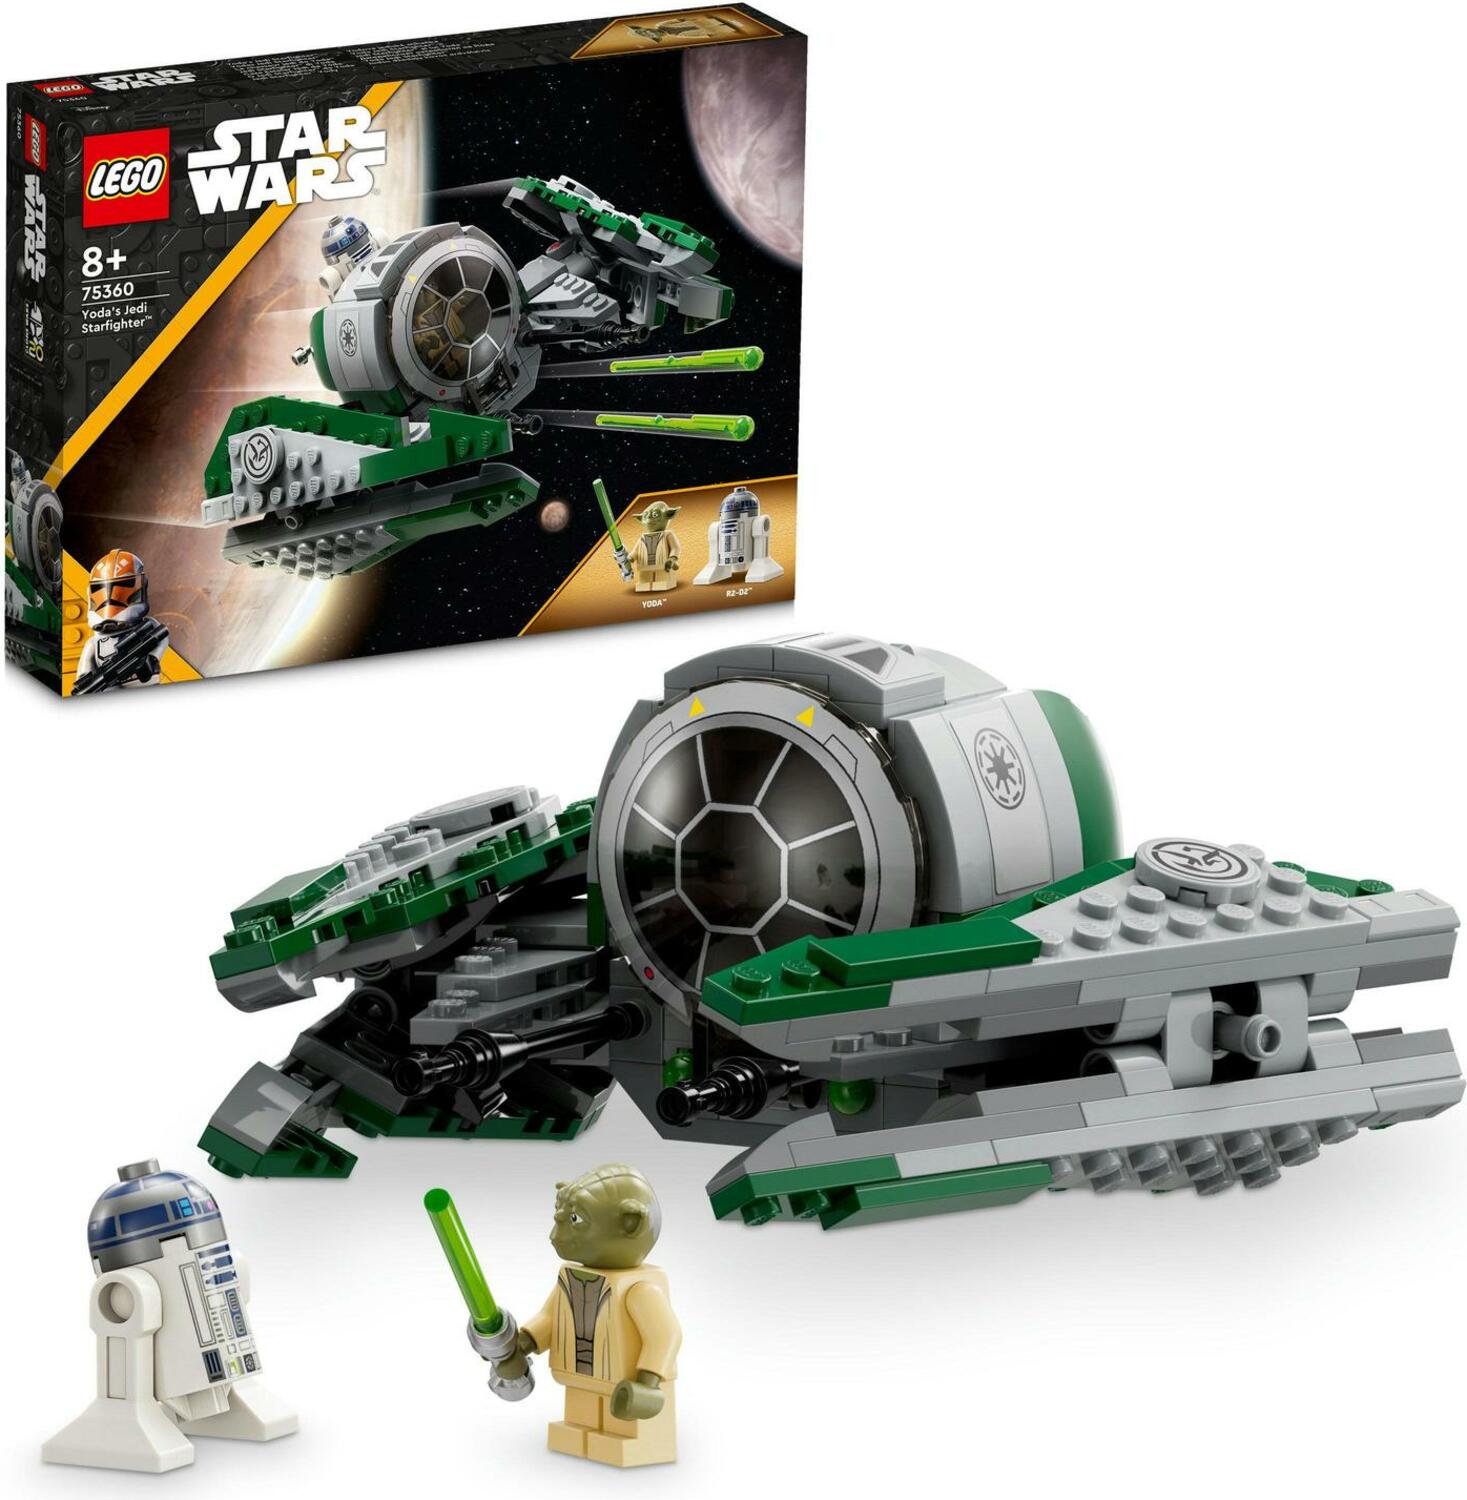 LEGO Star Wars 75239 Attacco al generatore di scudi sul pianeta Hoth - Star  Wars